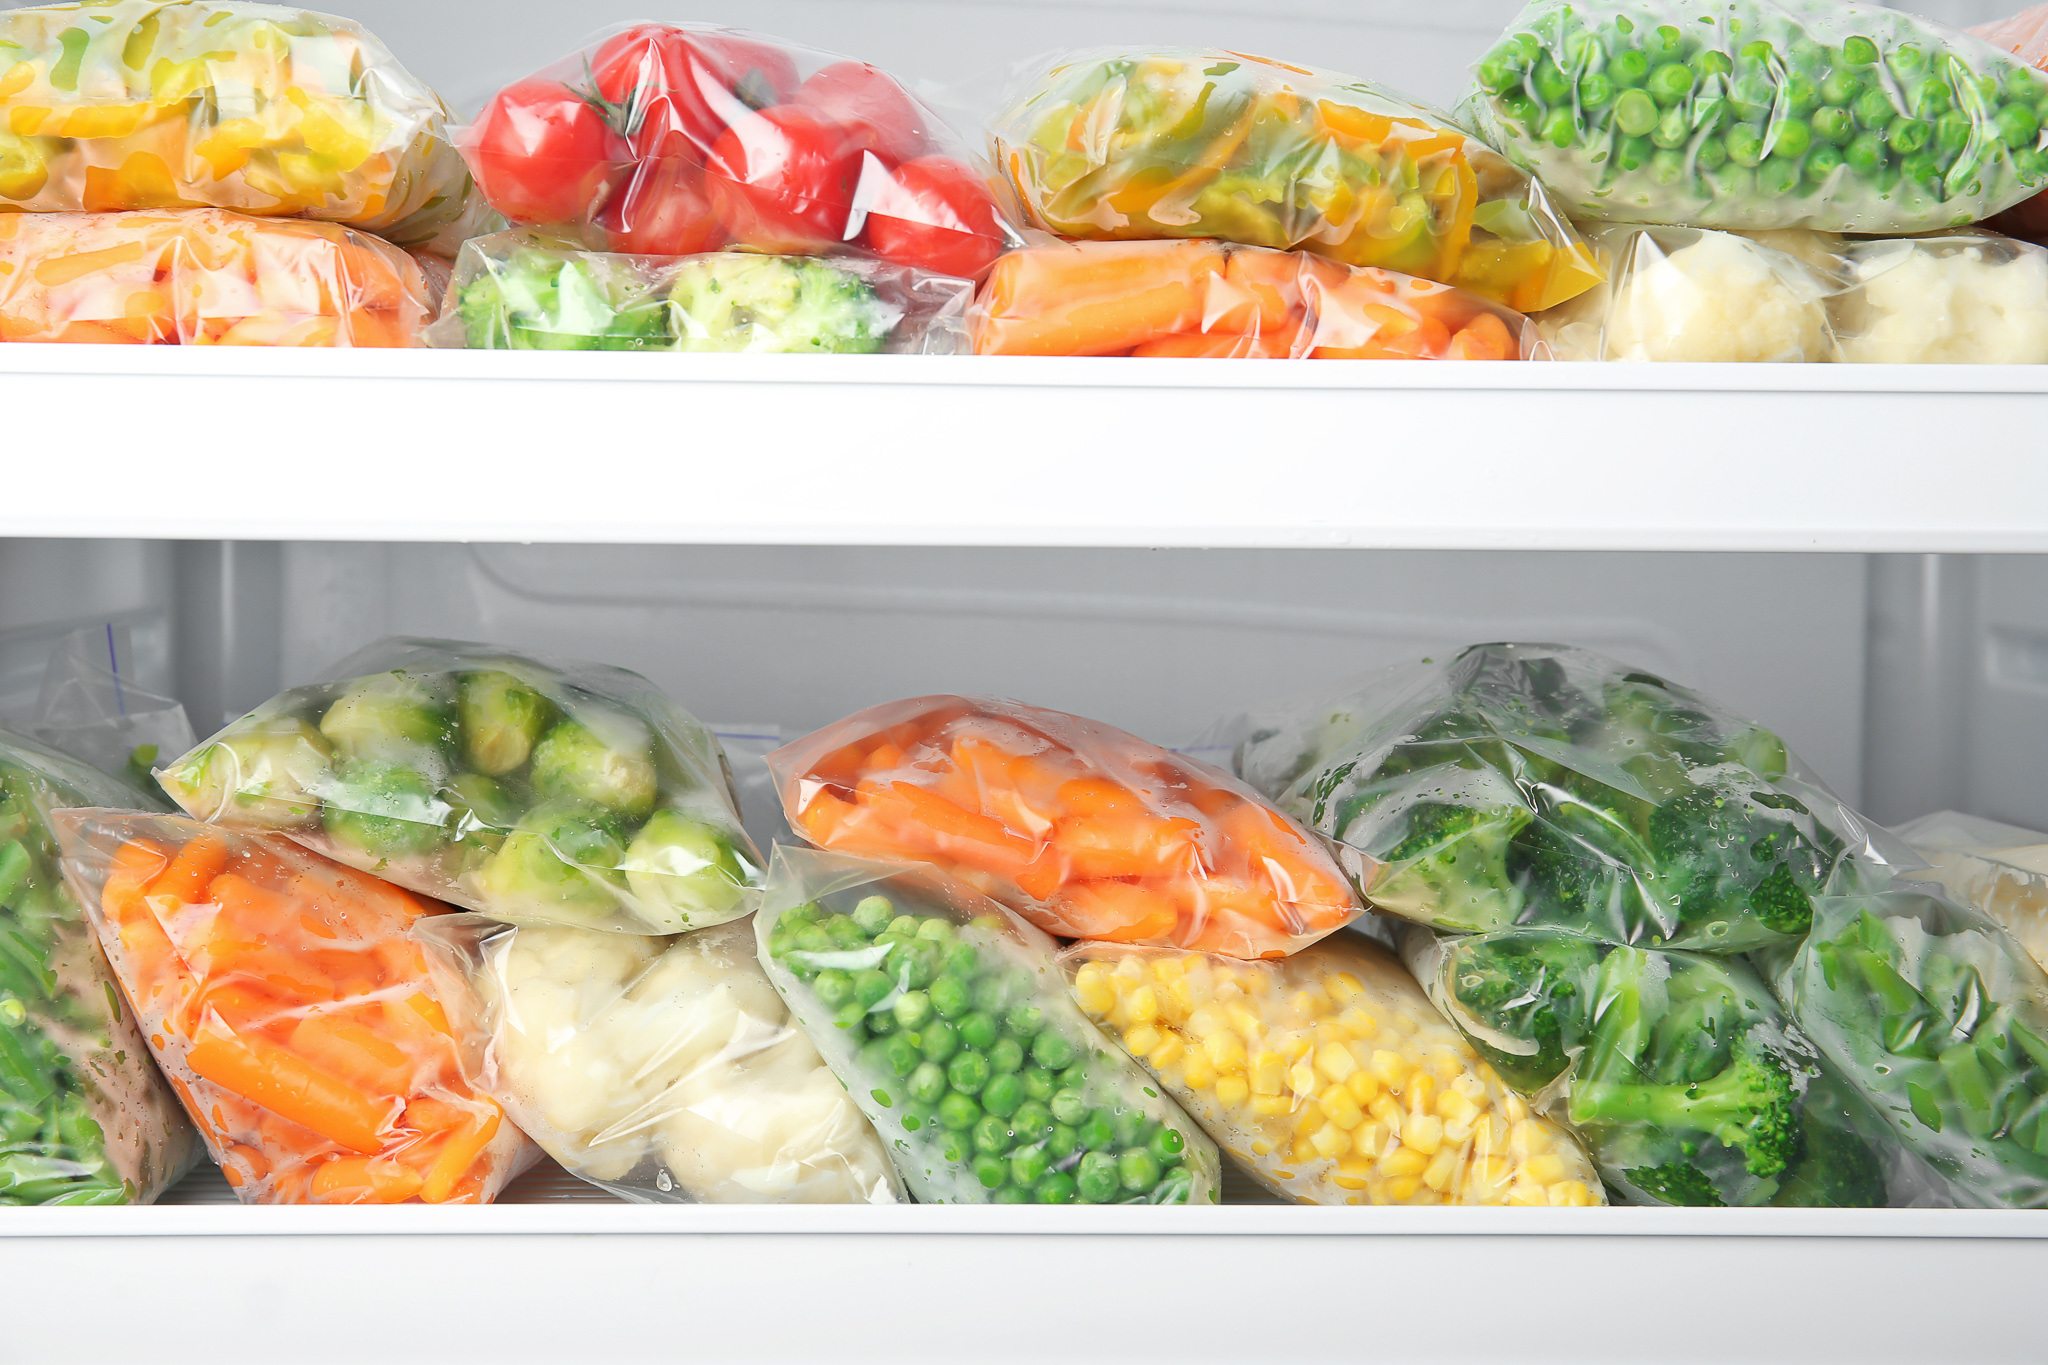 Можно замораживать белки. Хранение продуктов в холодильнике. Морозилки с овощами в магазинах. Контейнеры для овощей и фруктов в холодильниках с картинками. Разделитель в холодильник для овощей и фруктов.